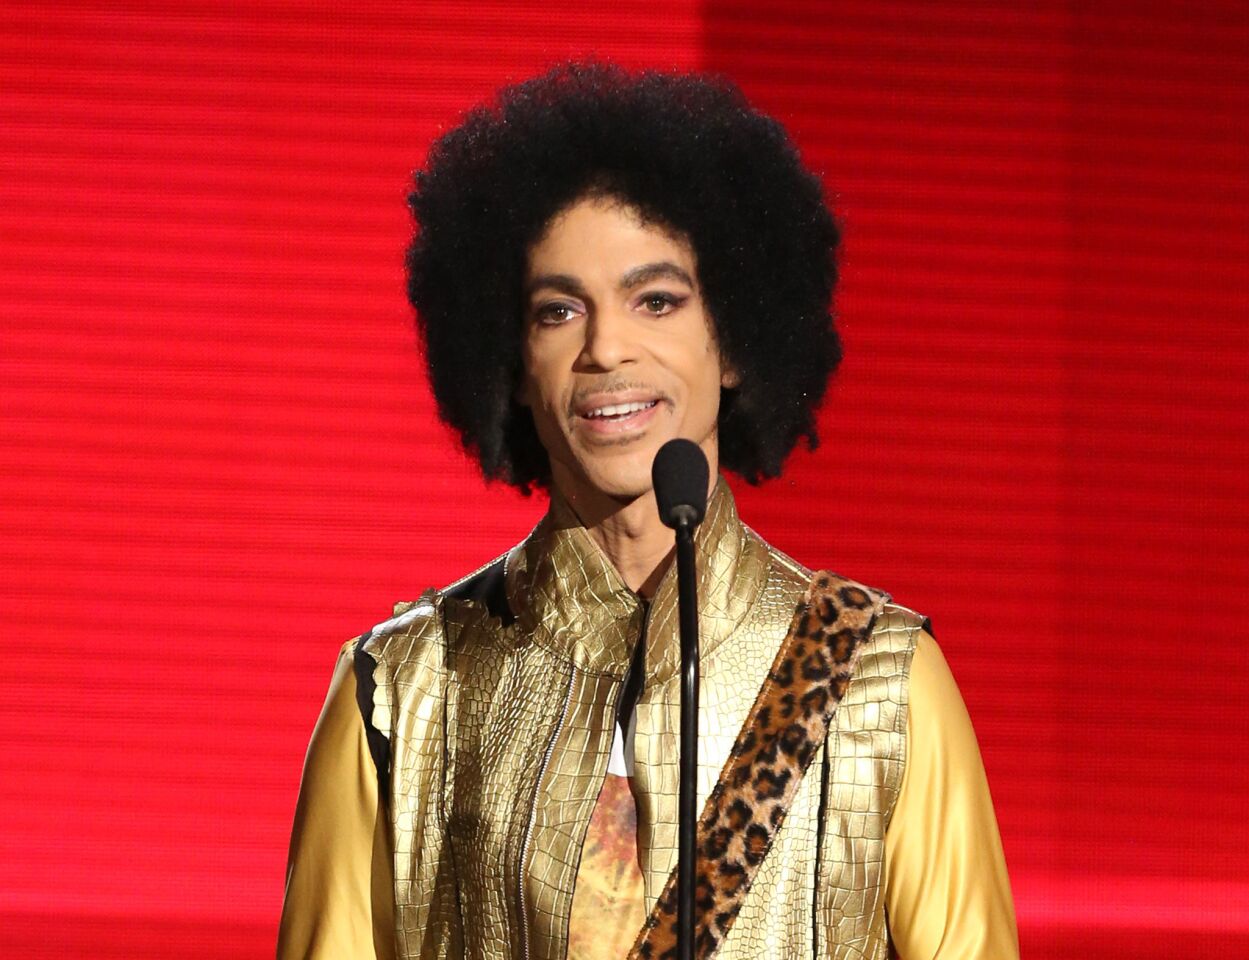 Prince | 1958 - 2016